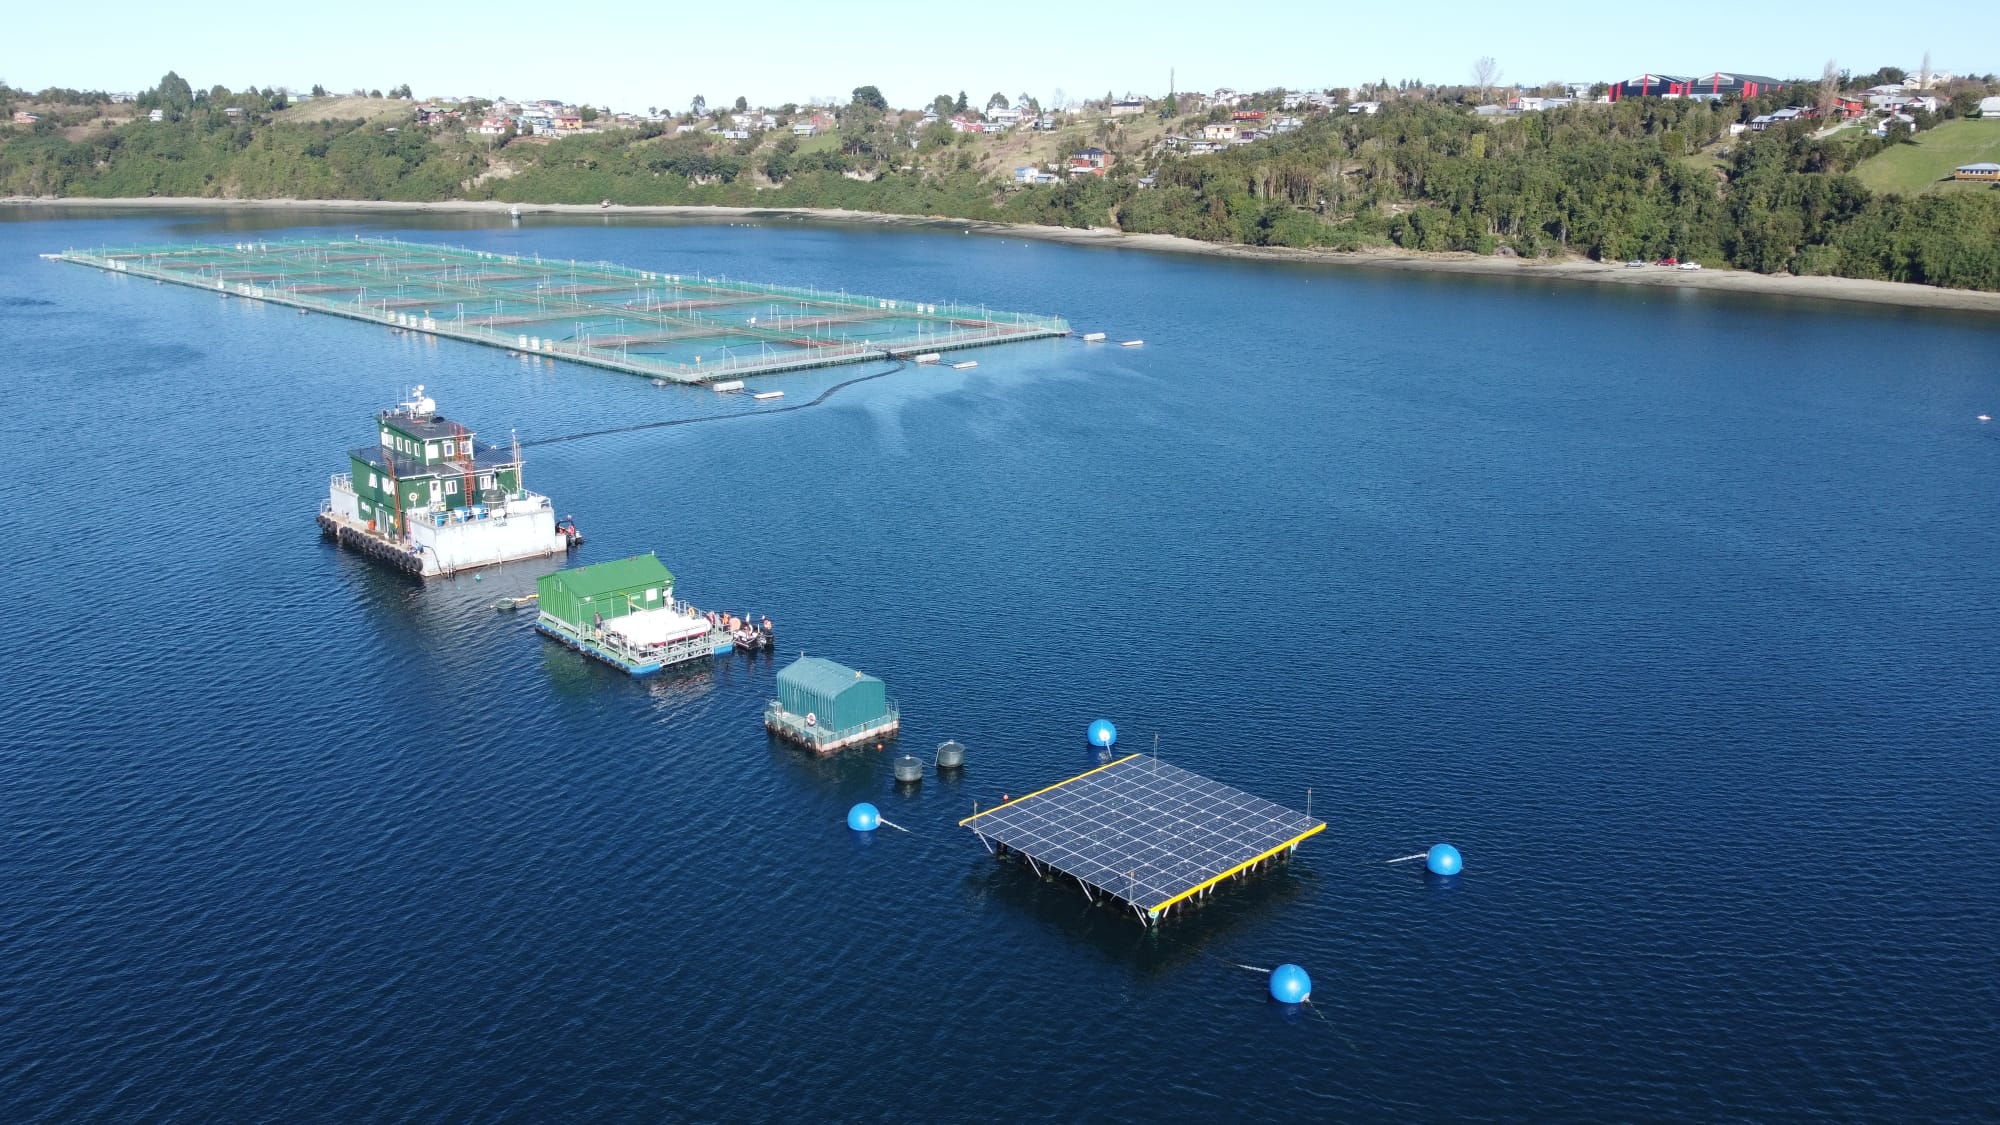 Gasco impulsa plataforma solar flotante de generación de energía para Salmones Aysén